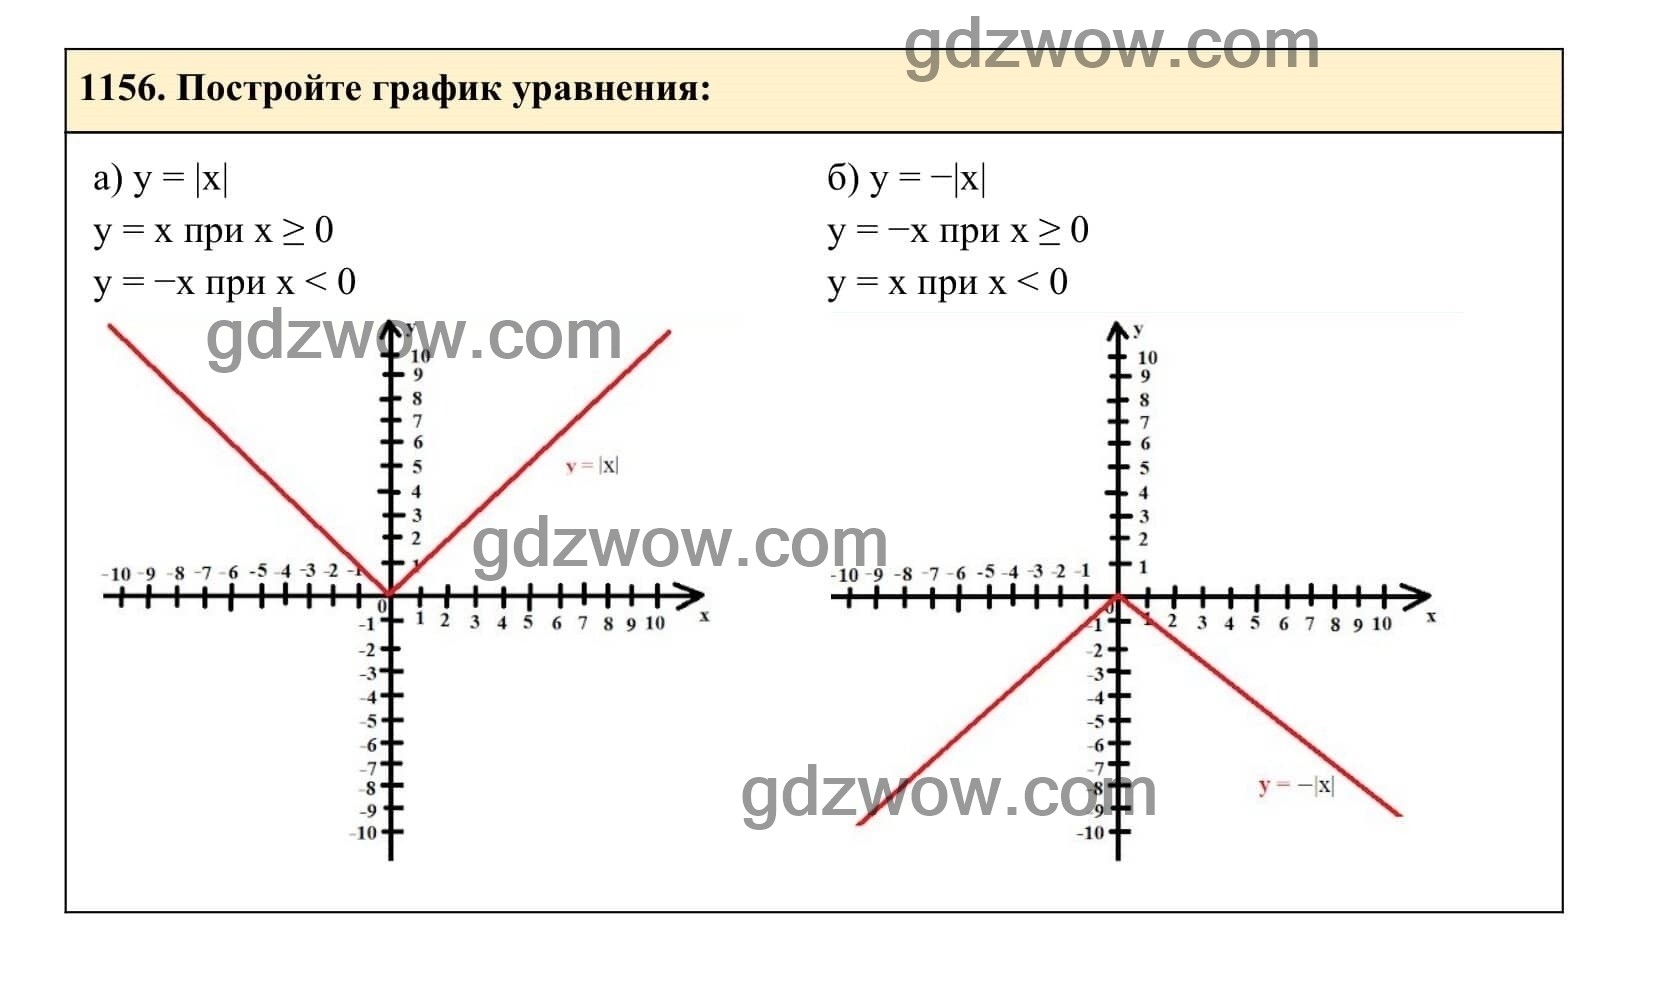 Упражнение 1156 - ГДЗ по Алгебре 7 класс Учебник Макарычев (решебник) - GDZwow